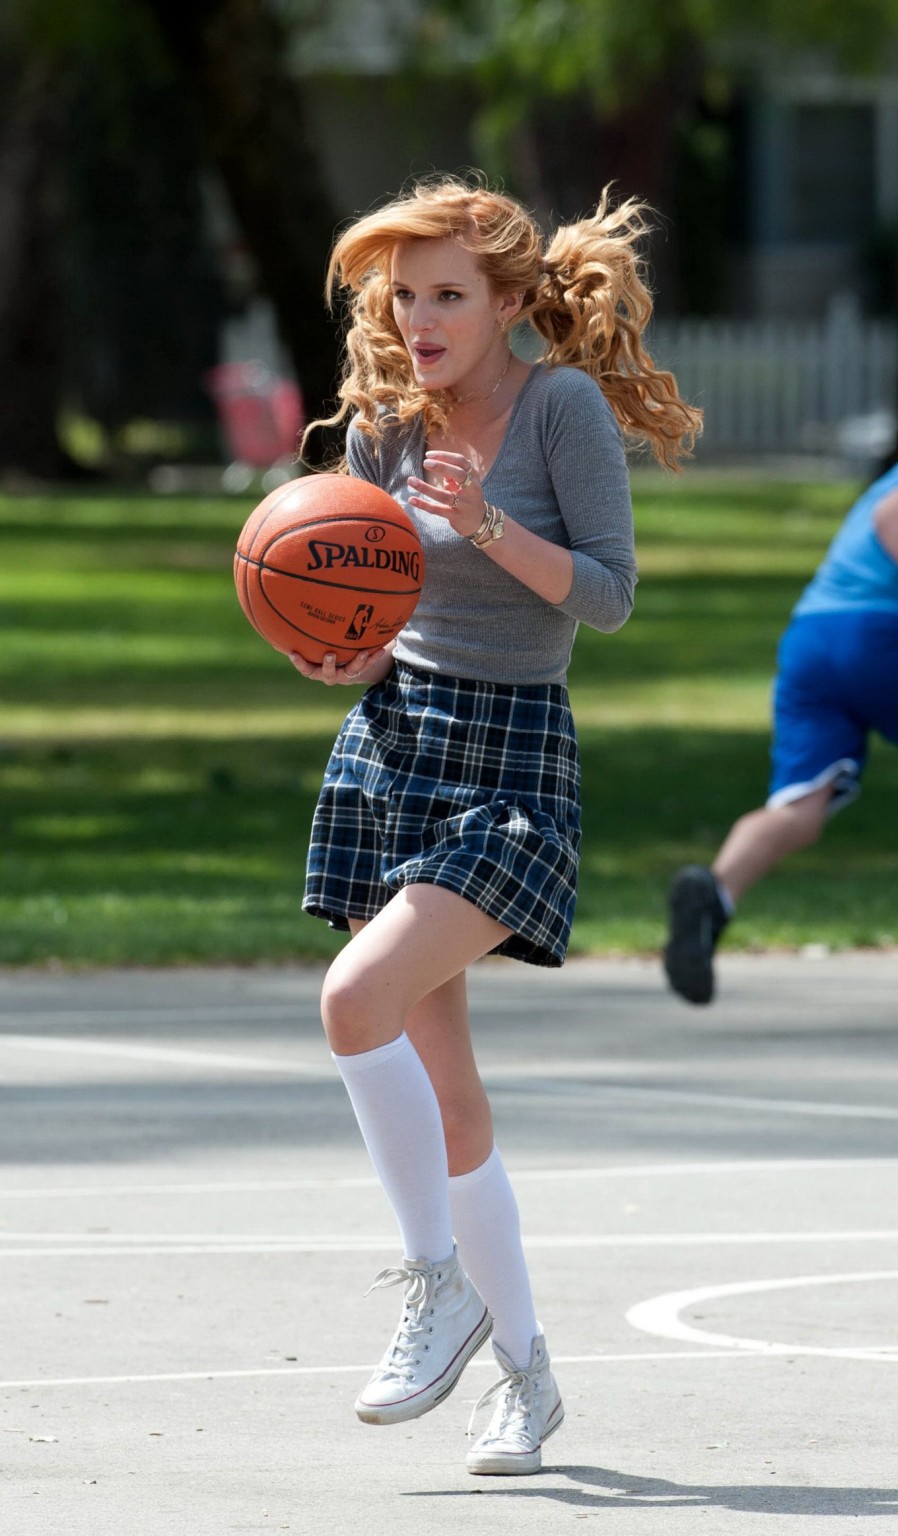 ベラ・ソーン、「Most ghos」の撮影で女子高生姿でバスケをする
 #75200801